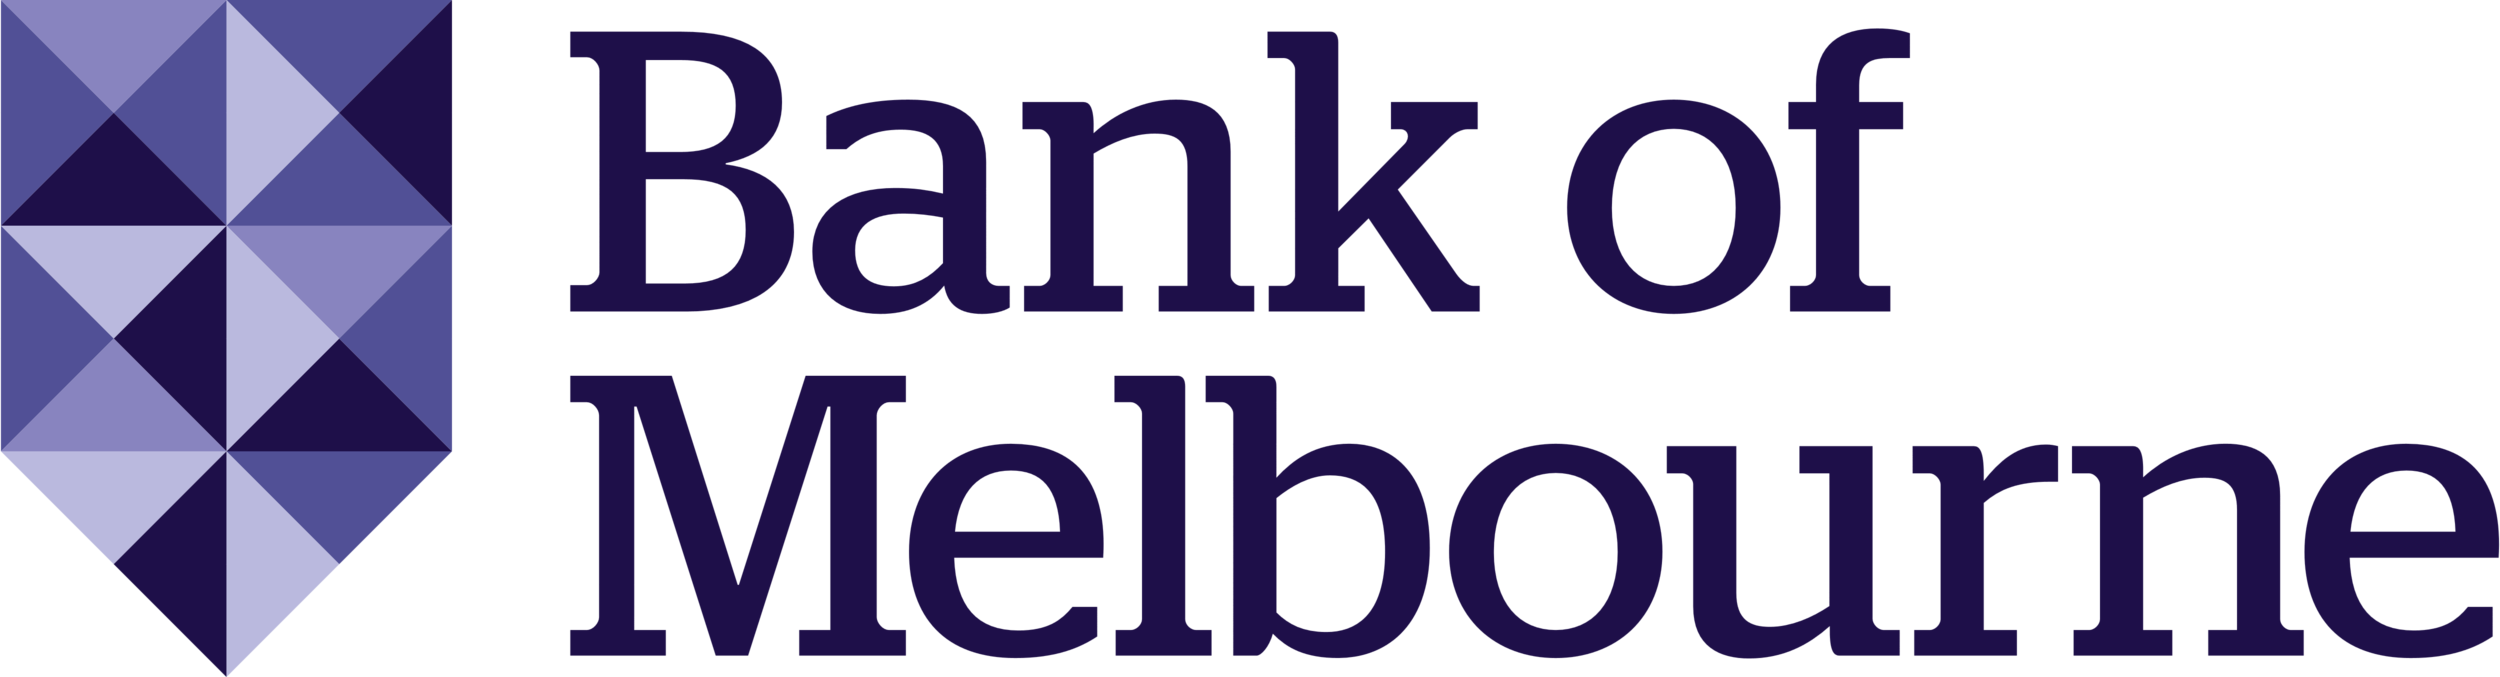 bank-of-melbourne-logo_transparent.png